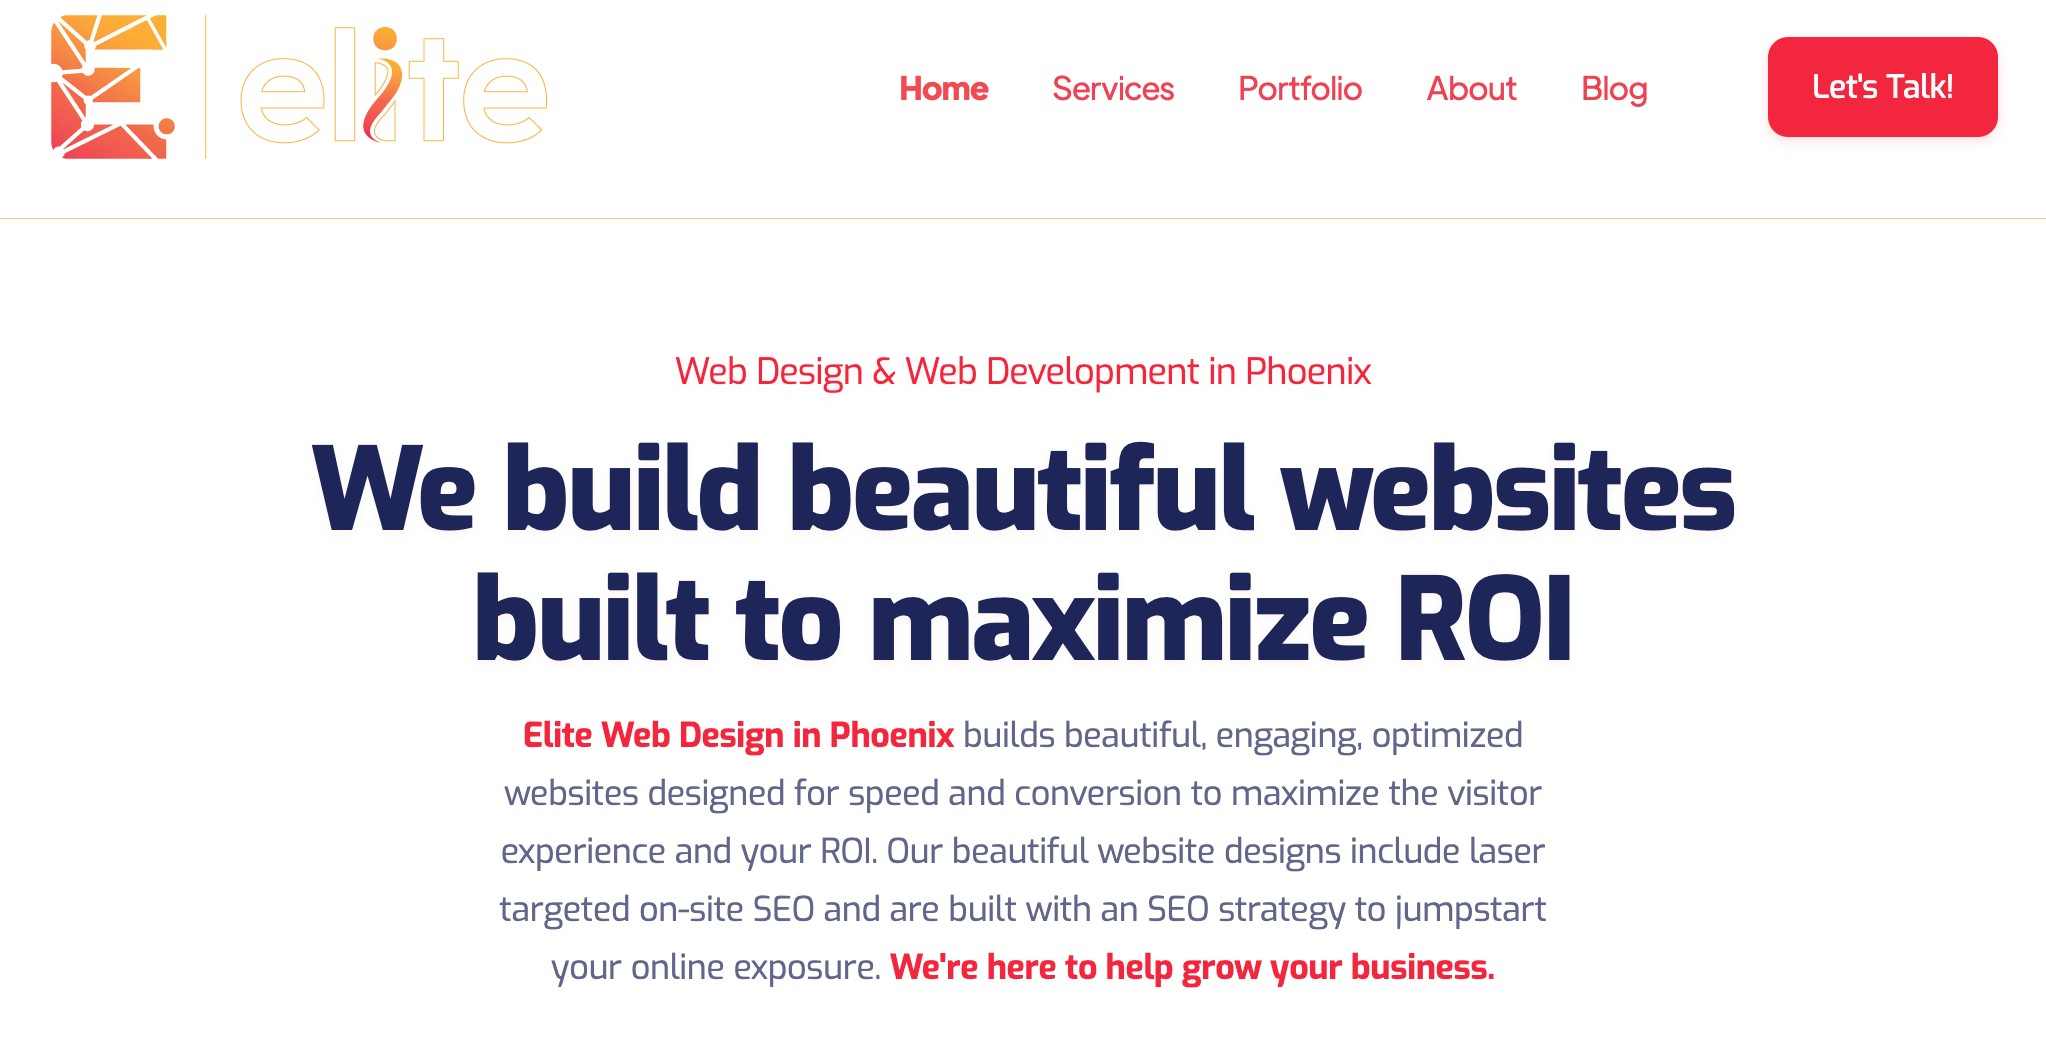 Elite Web Design